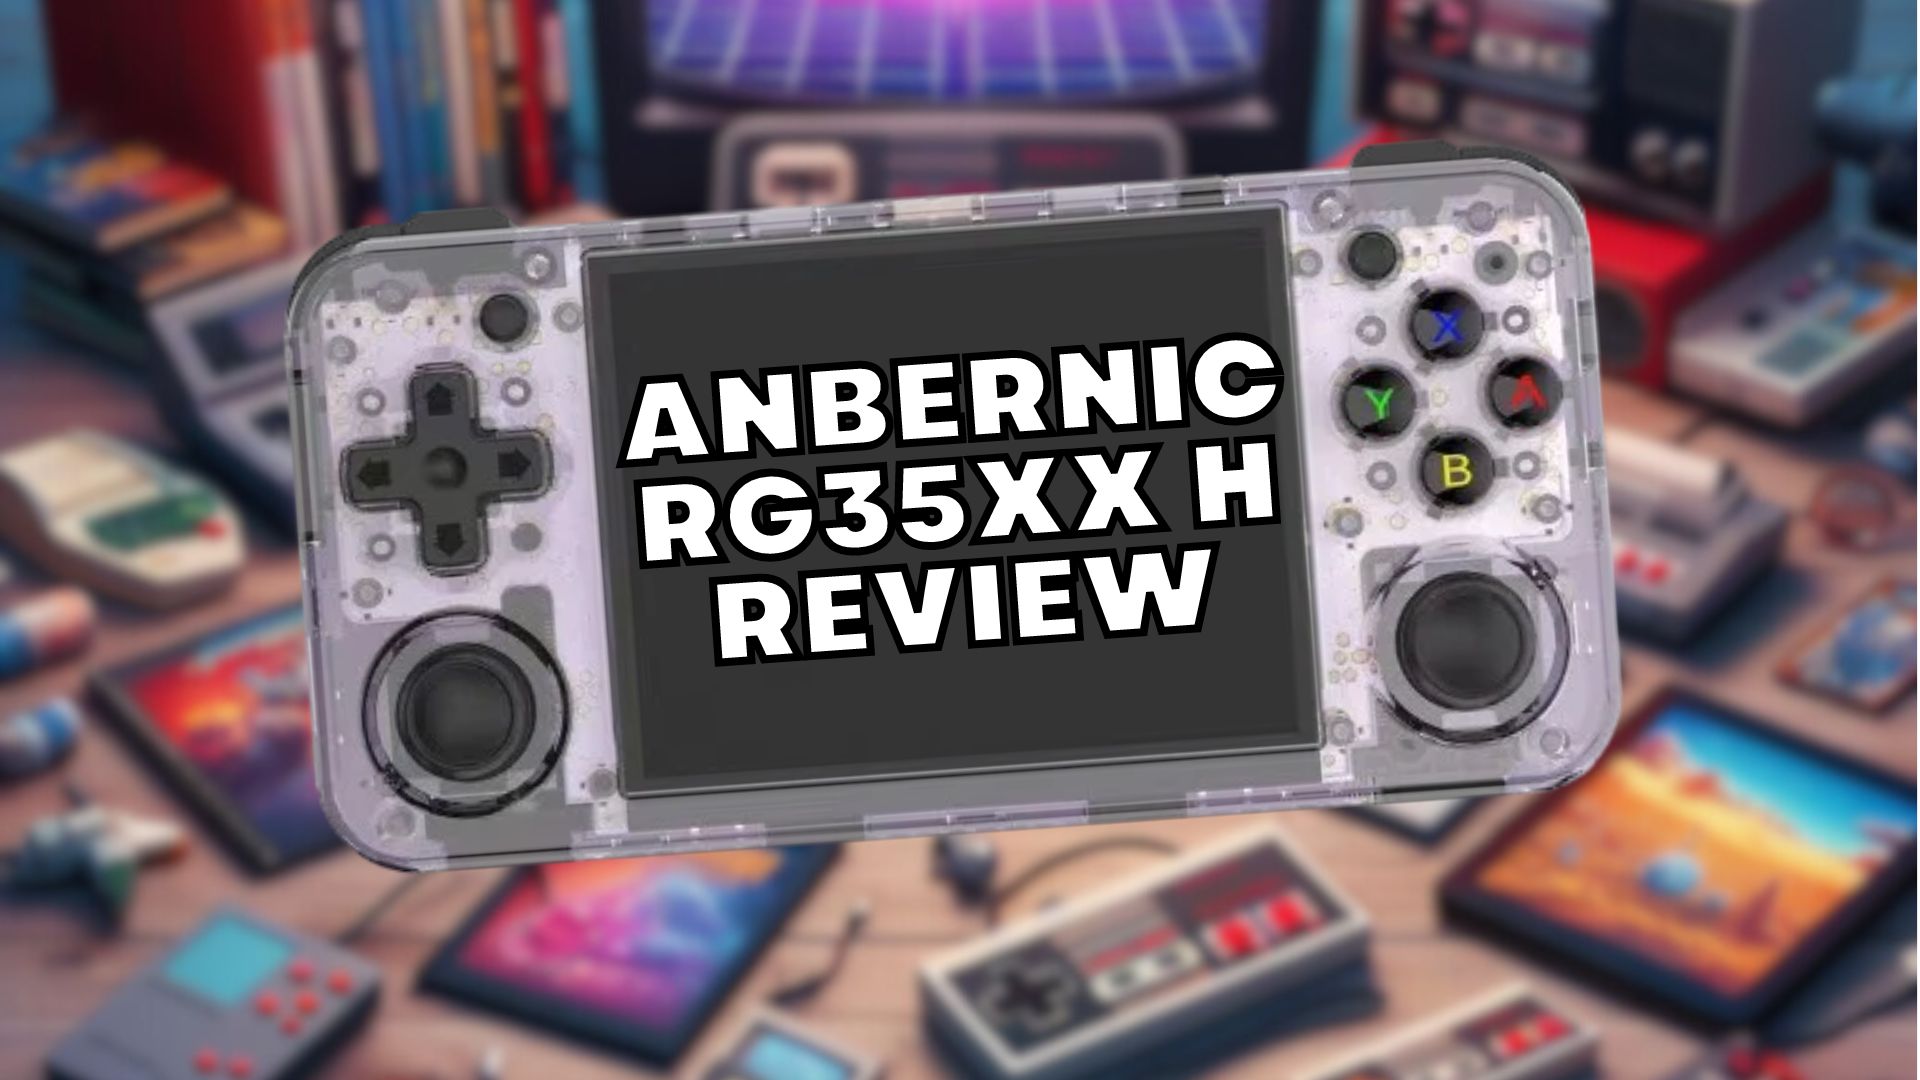 Anbernic RG35XX H Review - Une excellente console de jeu rétro à petit prix